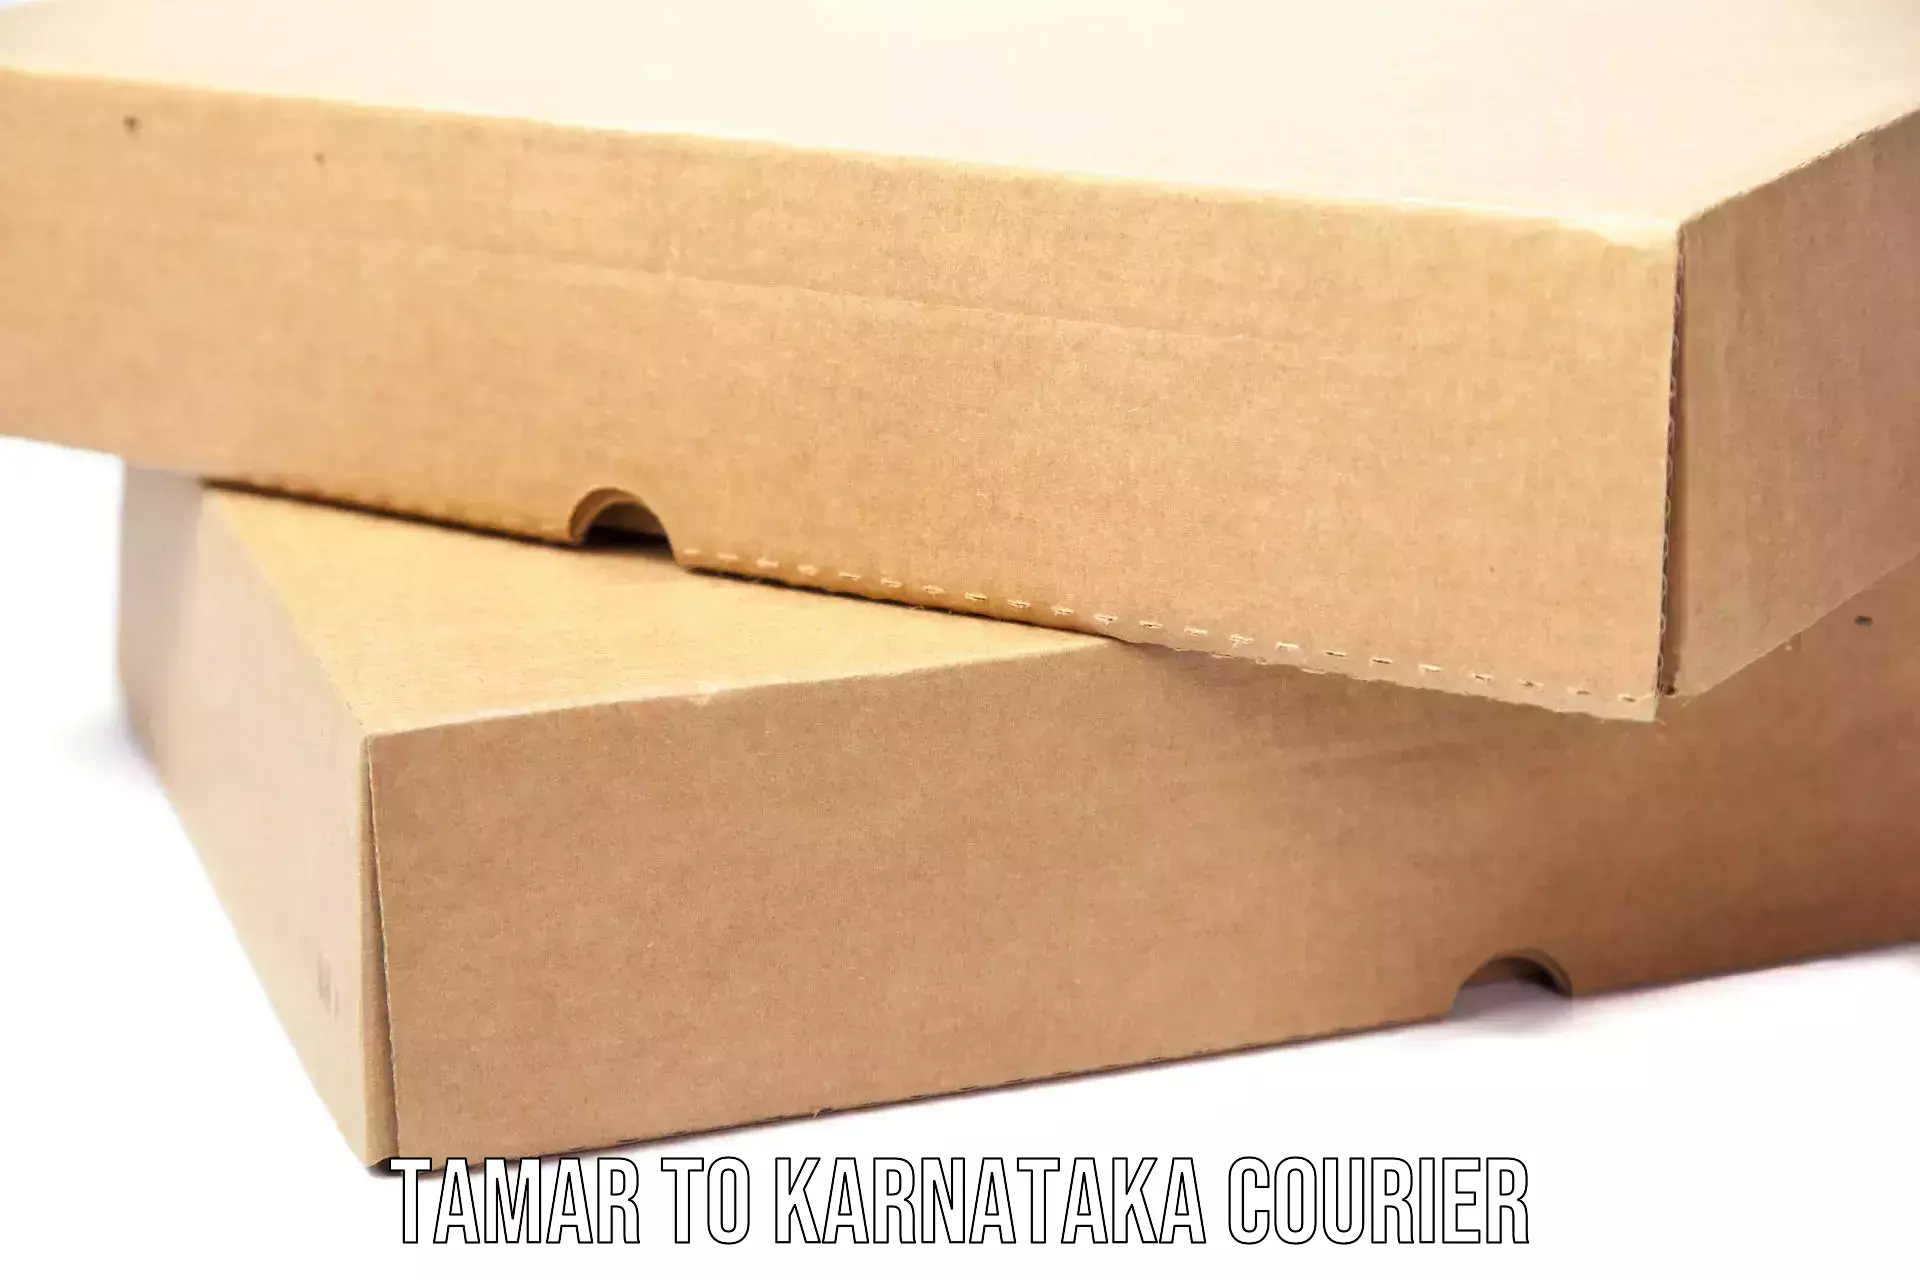 Digital courier platforms Tamar to Karnataka